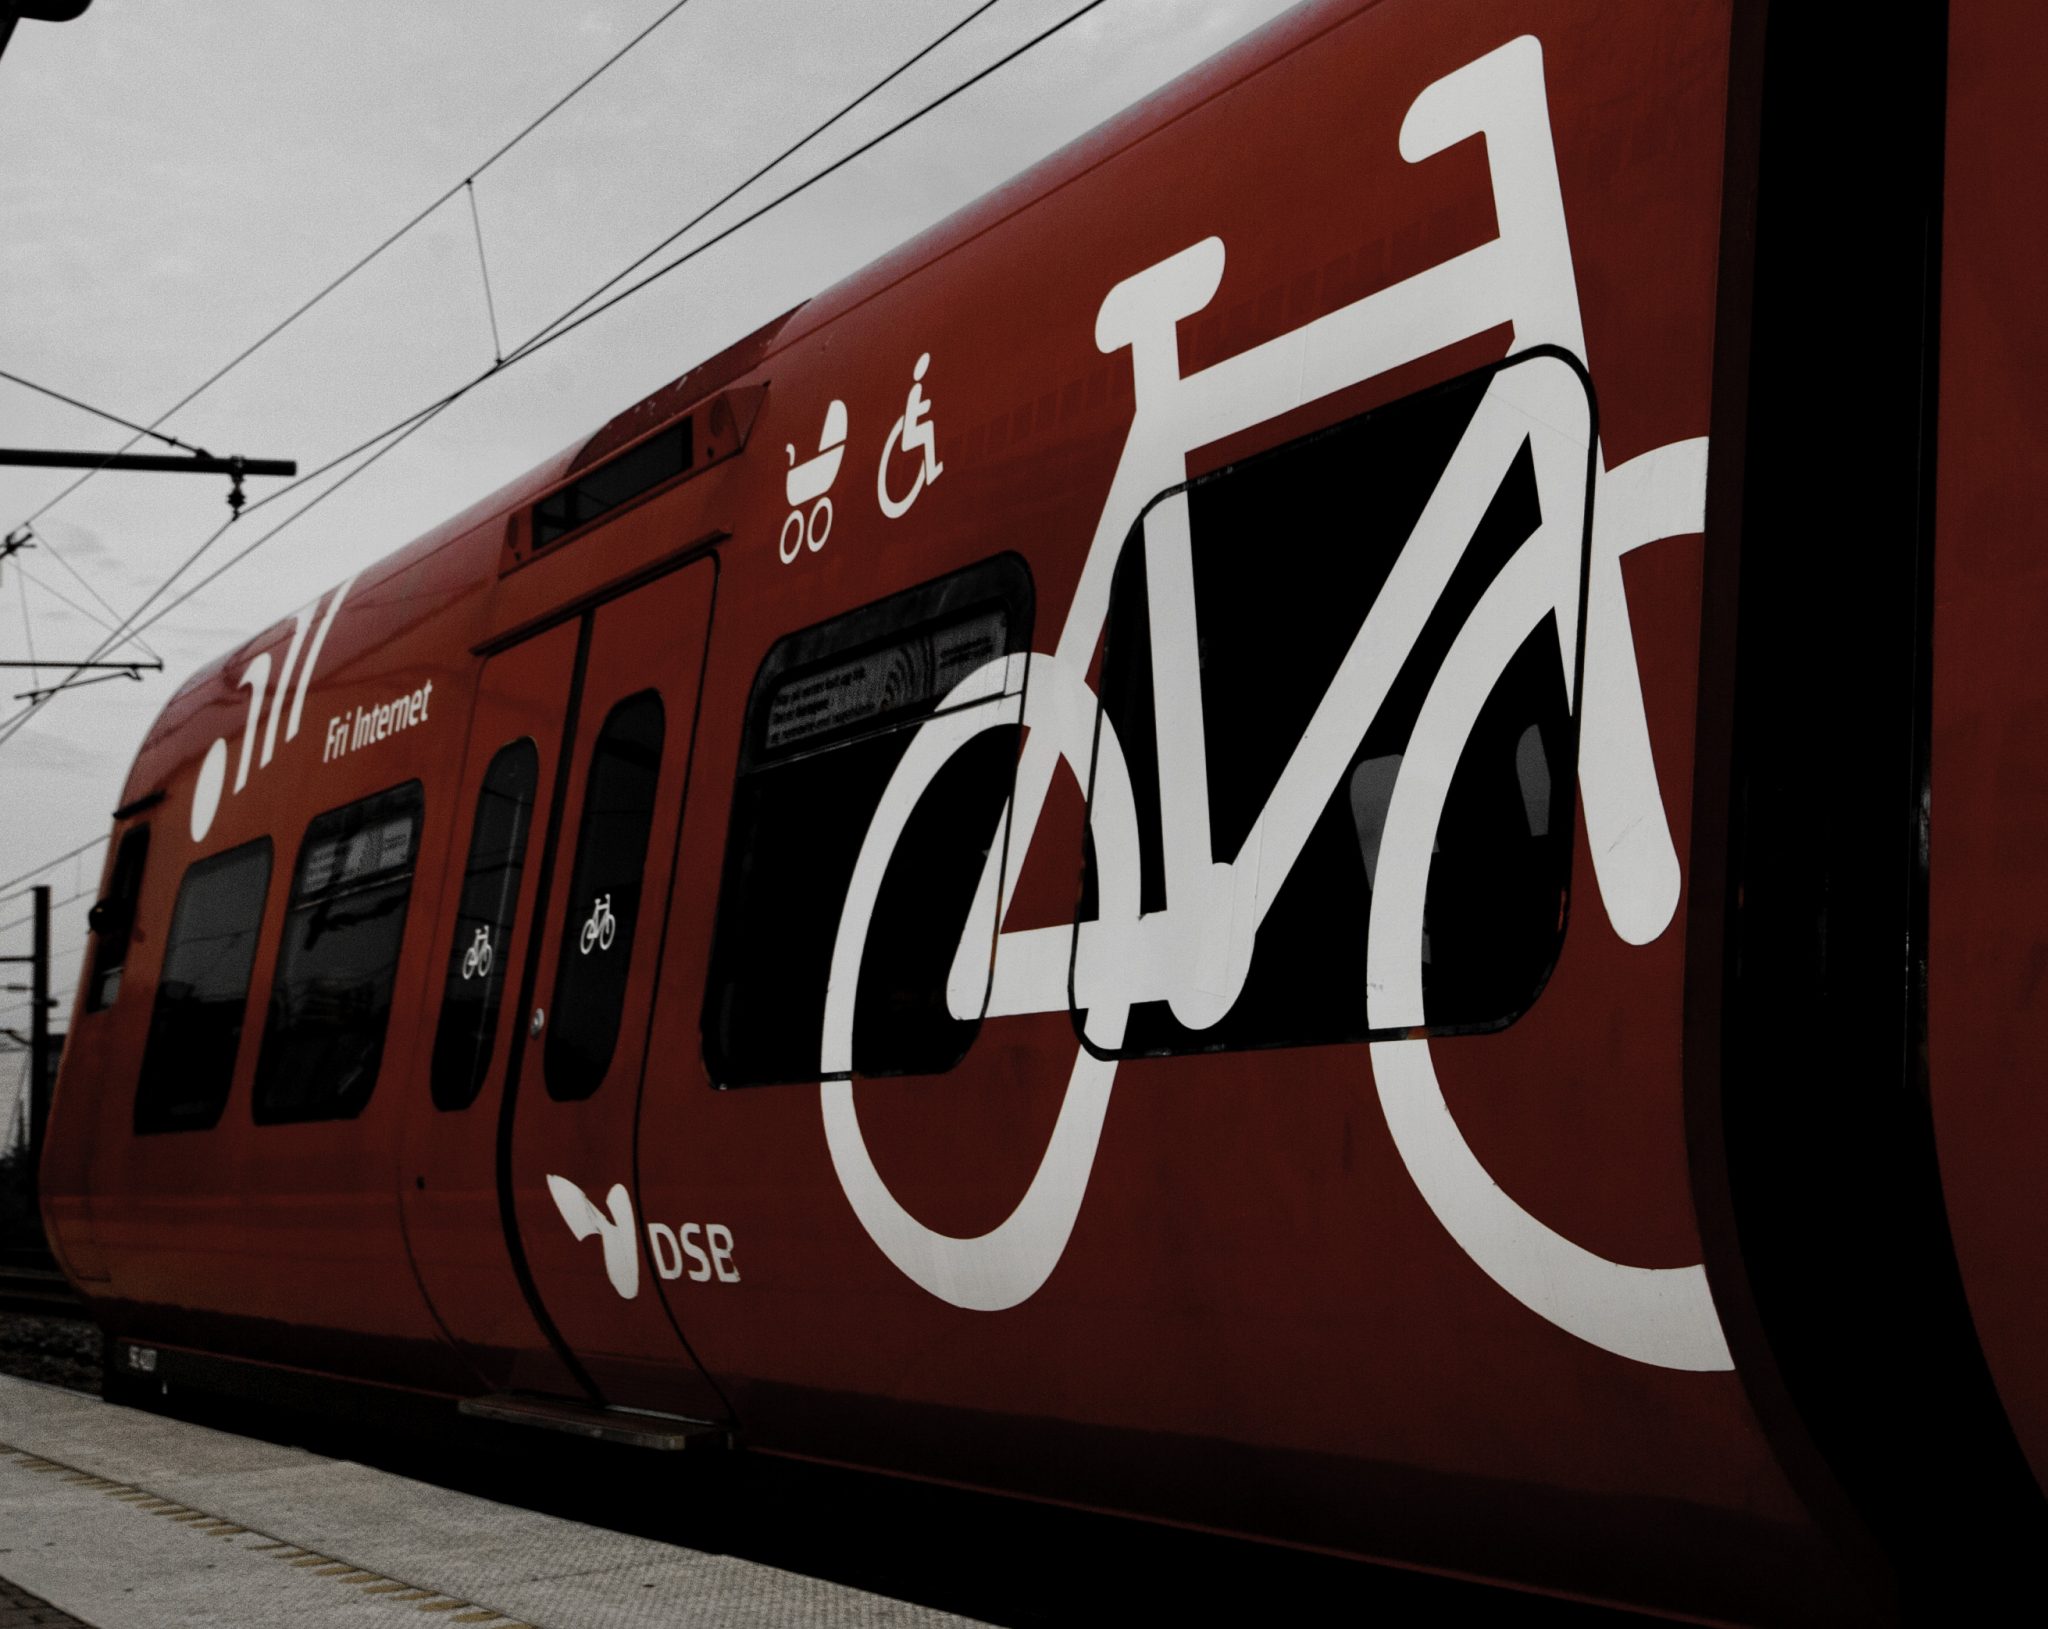 Cu bicicleta in tren - Uniunea Europeana